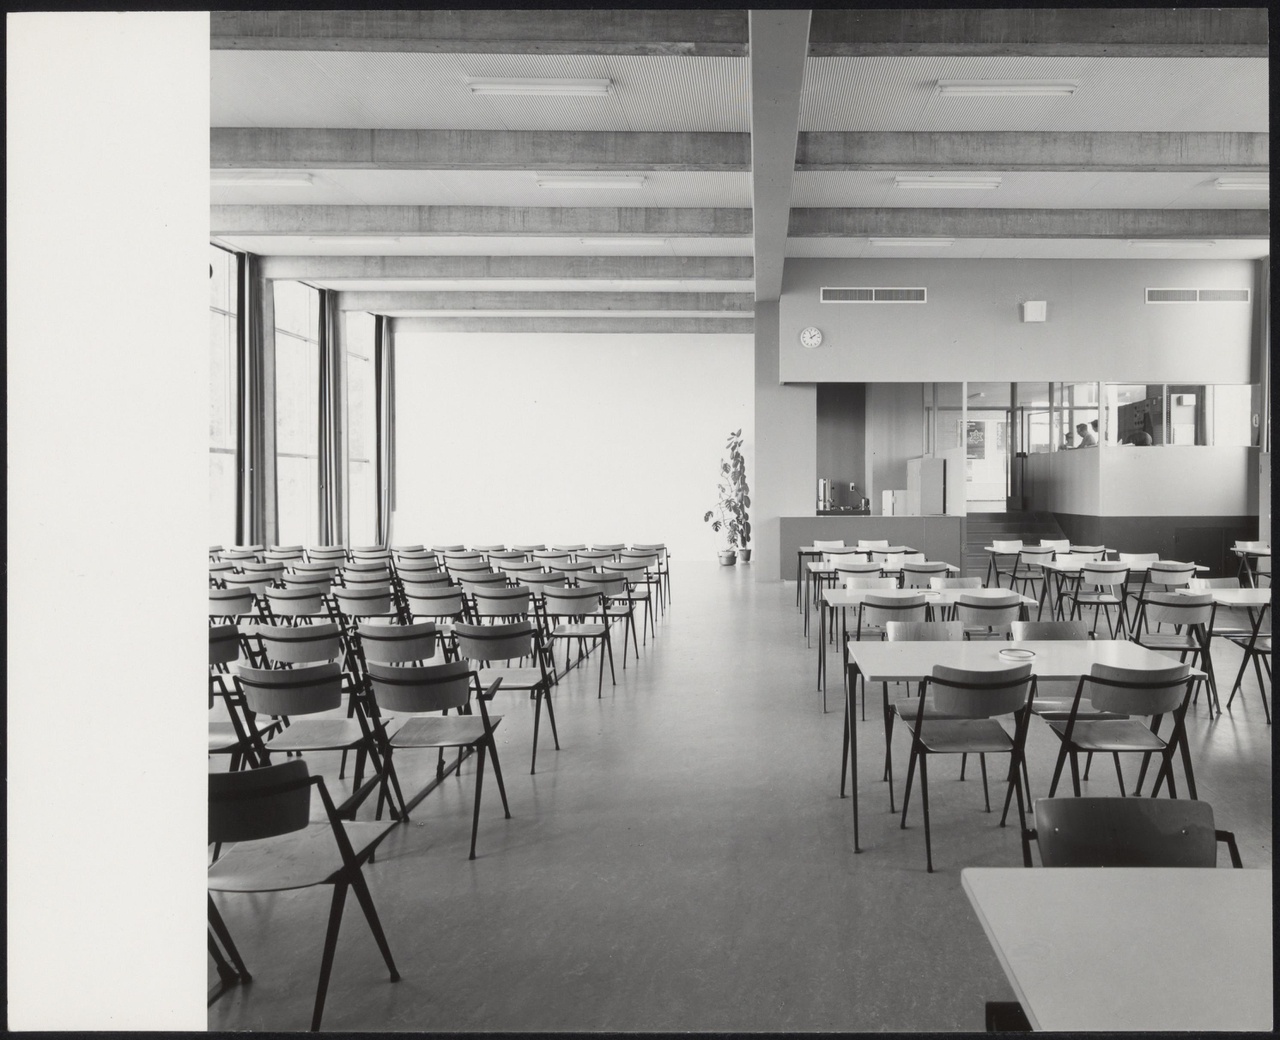 Afbeelding van Kunstacademie Arnhem, ca.1963, interieur aula, recht aanzicht